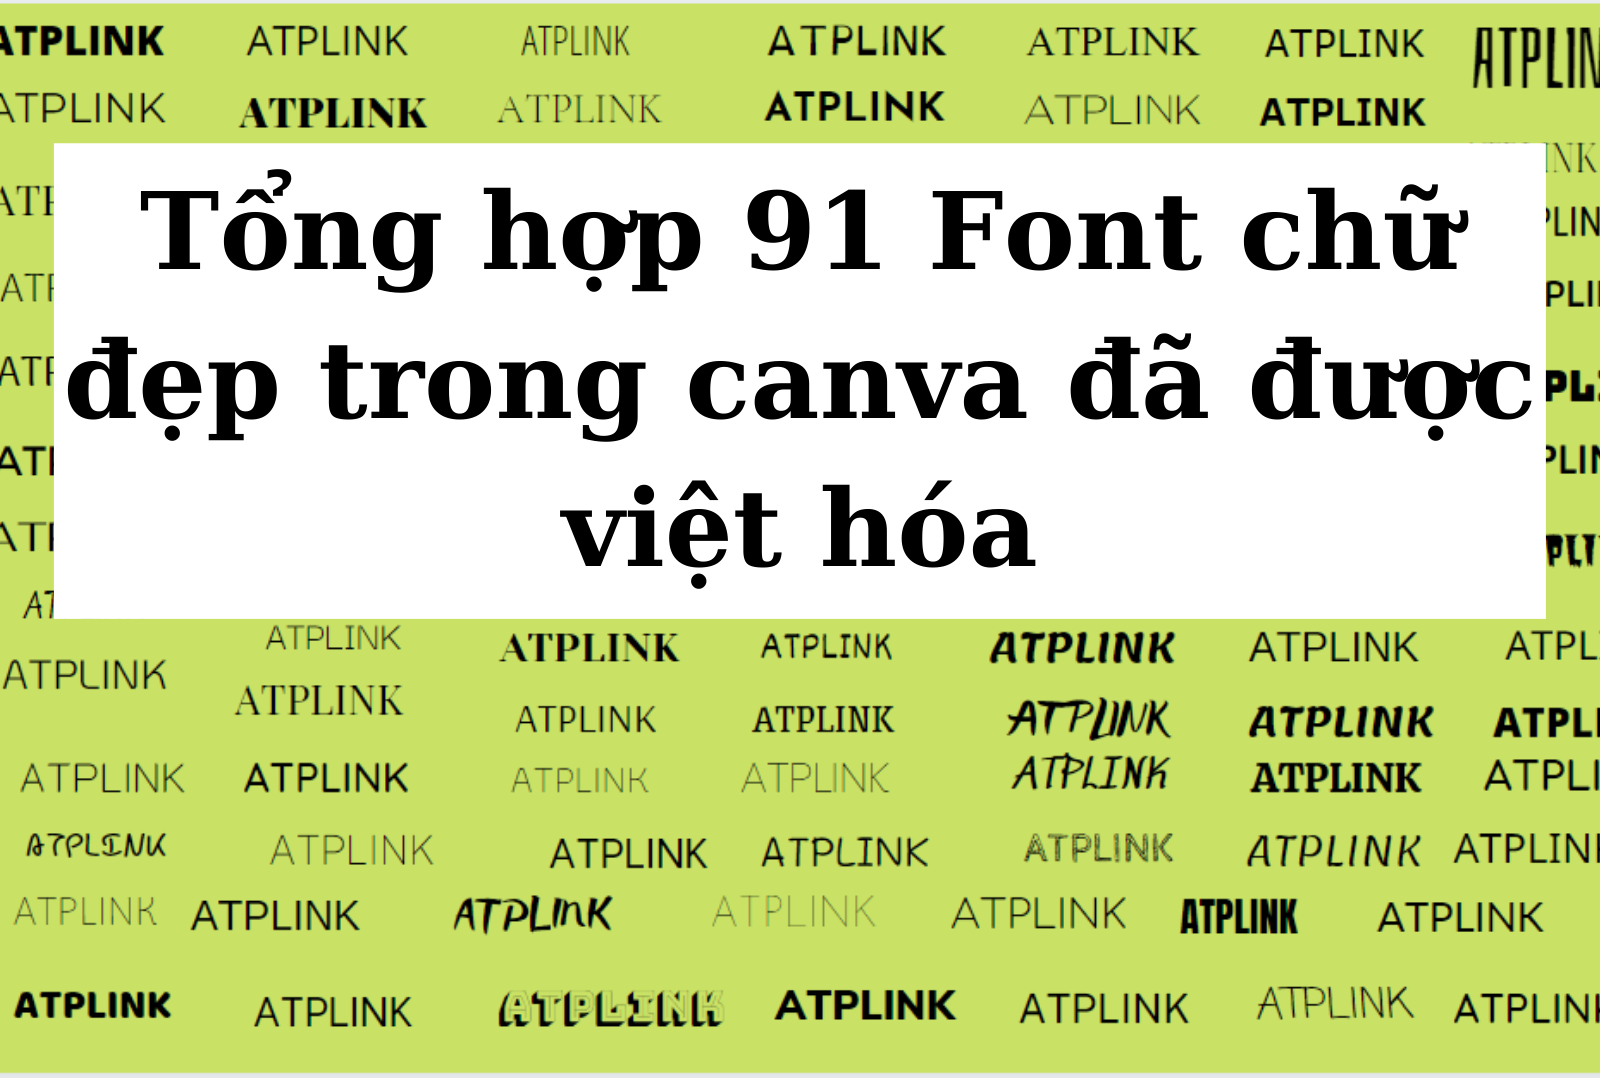 Tổng hợp 91 font chữ tiếng việt trong canva siêu đẹp 2024: Tận dụng ngay bộ sưu tập 91 font chữ Việt mới nhất được cập nhật trong Canva, giúp dự án của bạn trở nên chuyên nghiệp và độc đáo hơn. Tất cả các phông chữ đều được thiết kế đặc biệt cho các ứng dụng, trang web và bản in.